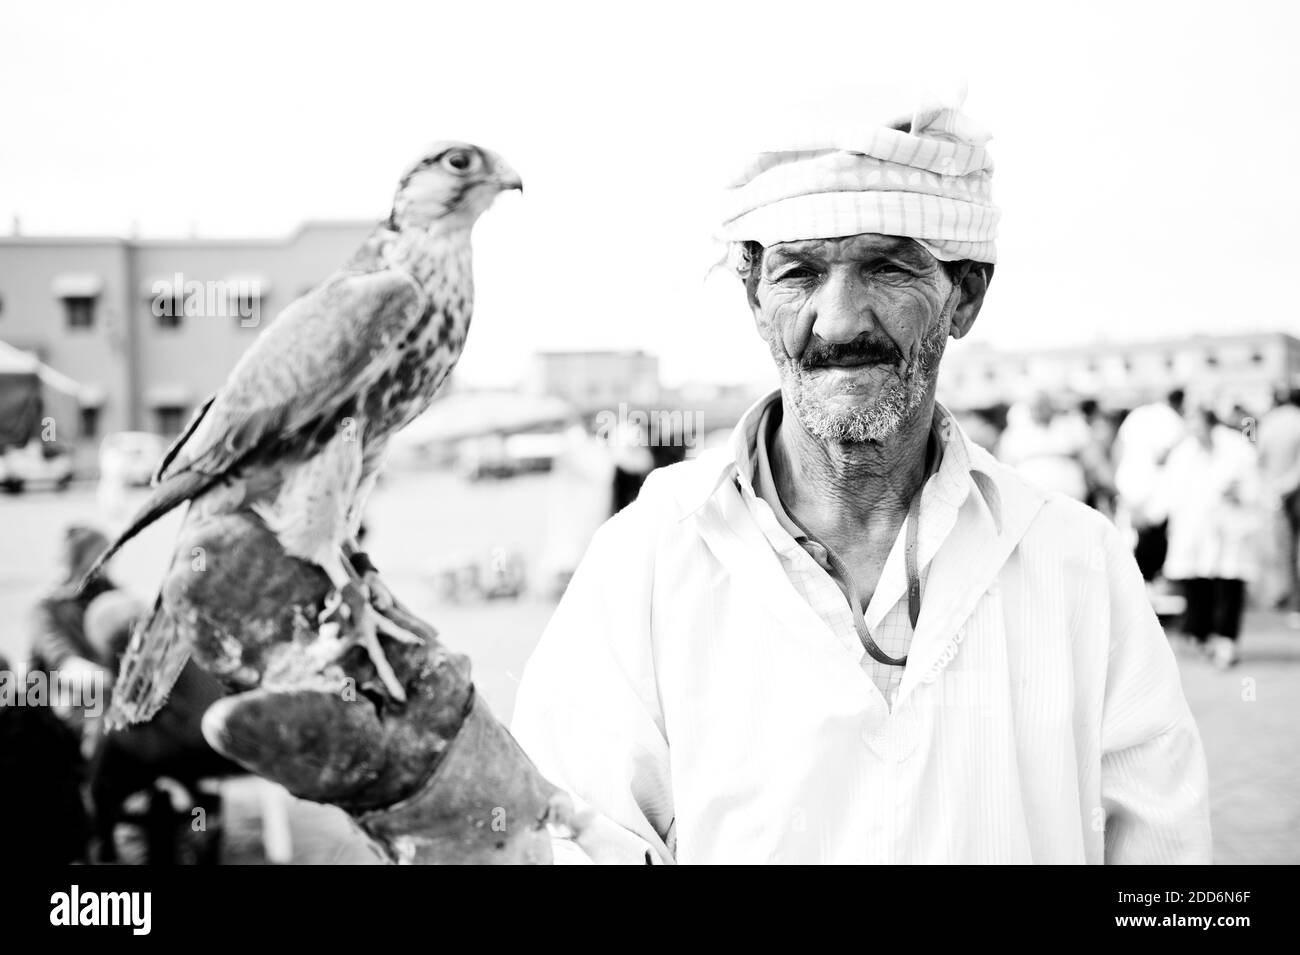 Portrait en noir et blanc d'un homme avec un oiseau de proie sur la place Djemaa El Fna, Marrakech (Marrakech), Maroc, Afrique du Nord Banque D'Images